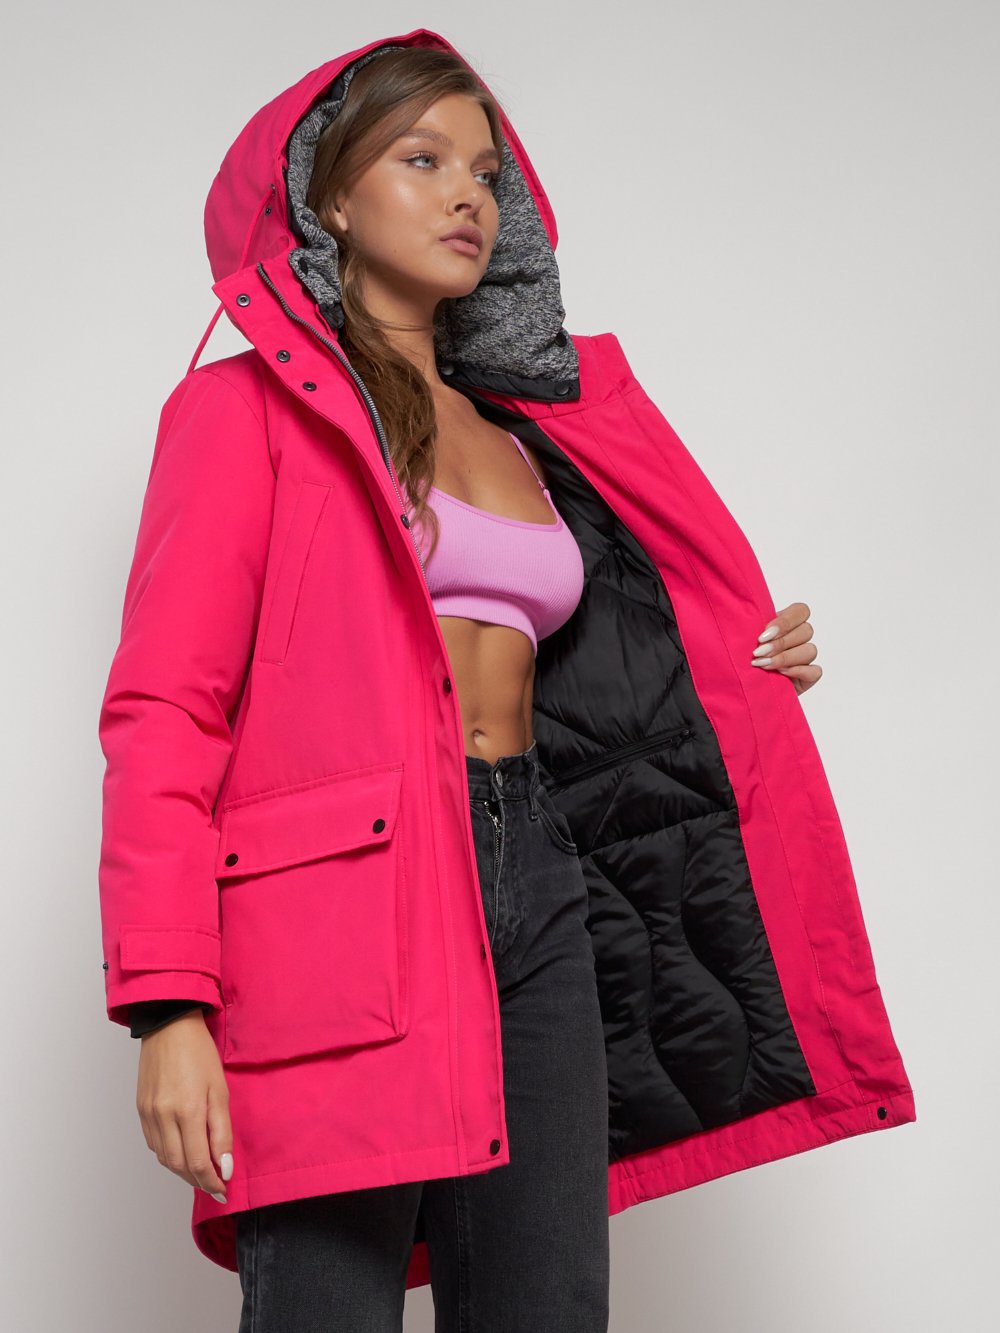 Купить куртку парку женскую оптом от производителя недорого в Москве 2329R 1